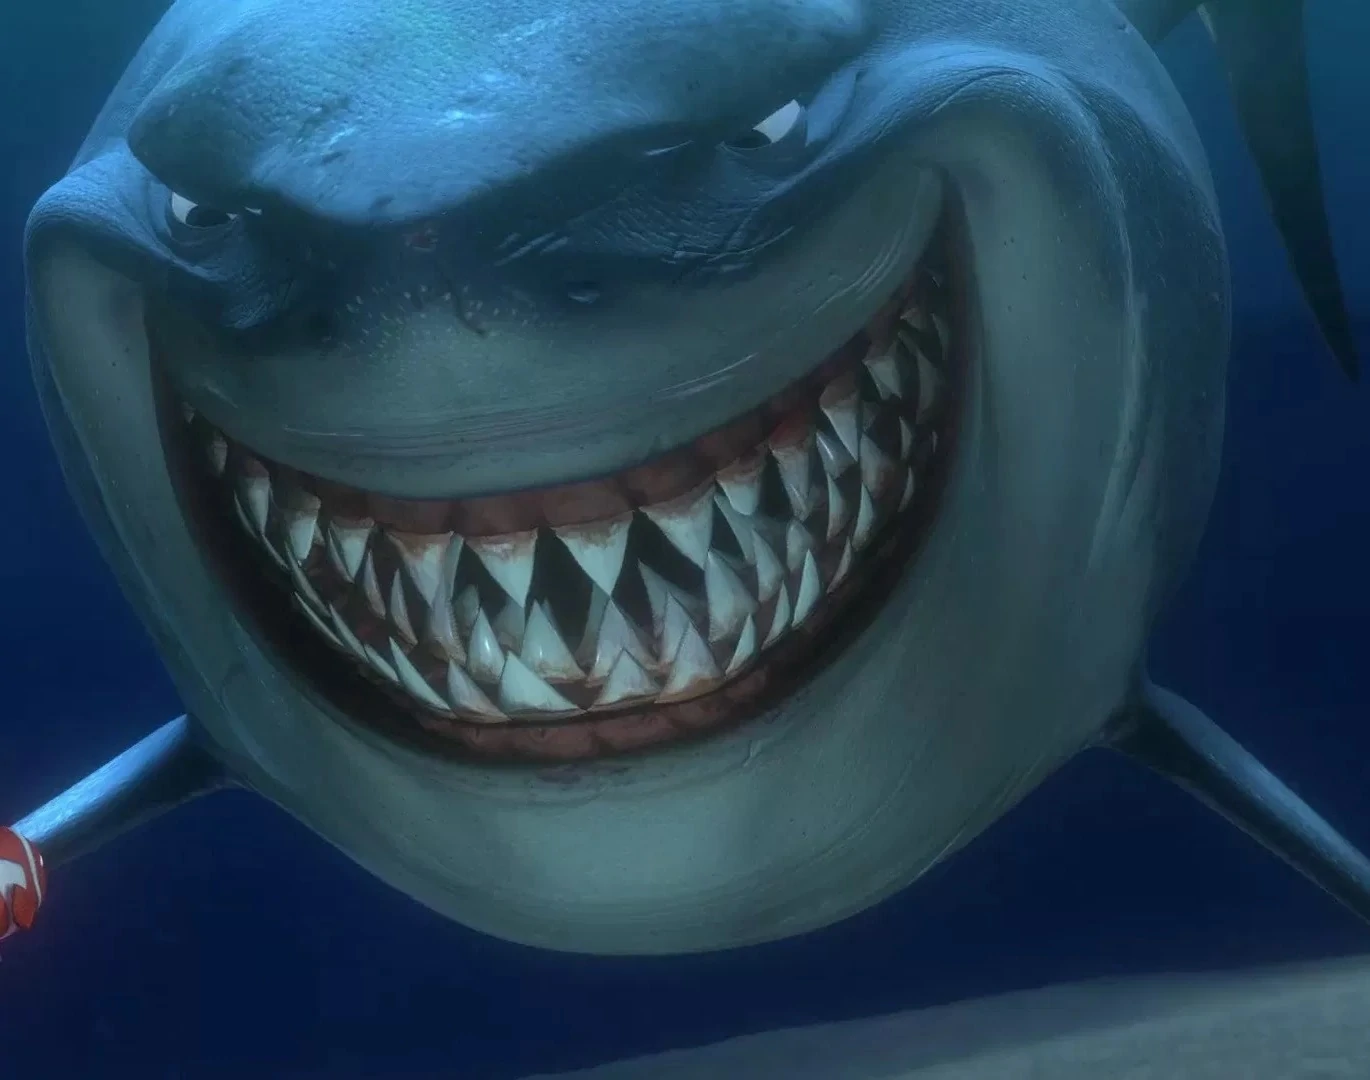 Un requin animé avec un large sourire, montrant des dents pointues, et un harpon visible au premier plan sous l'eau bleue de l'océan, rappelant "Le Monde de Nemo".